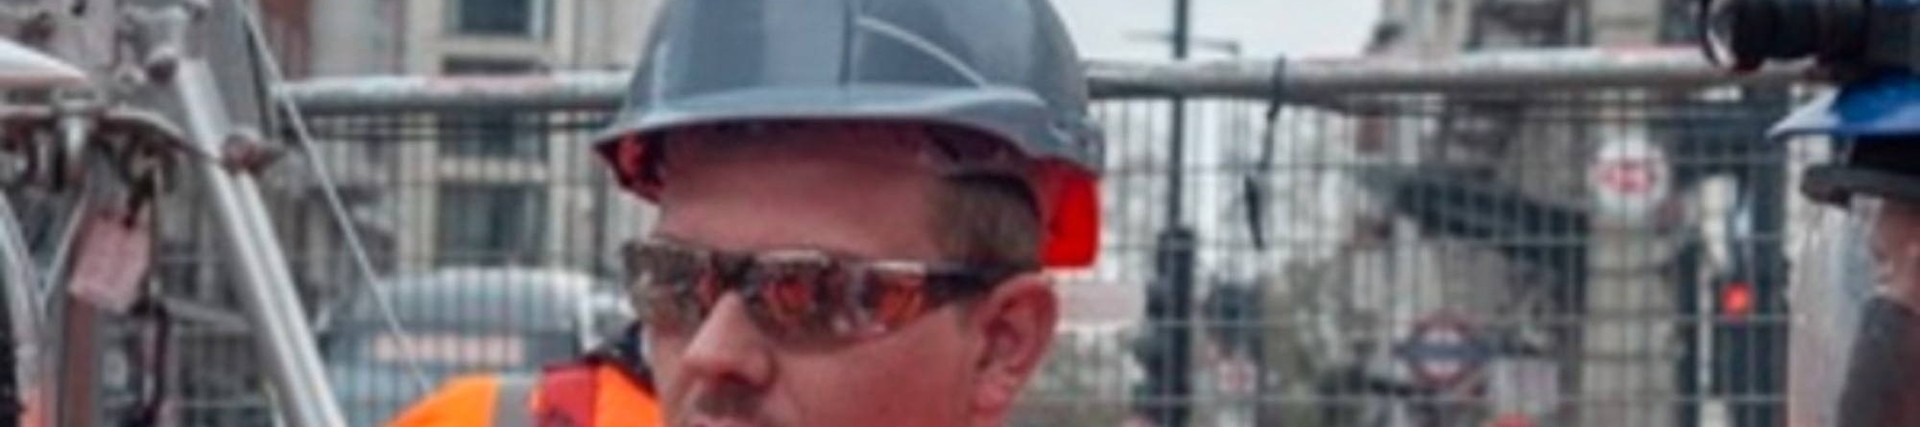  Morson Contractors Praised In Rescue Drill